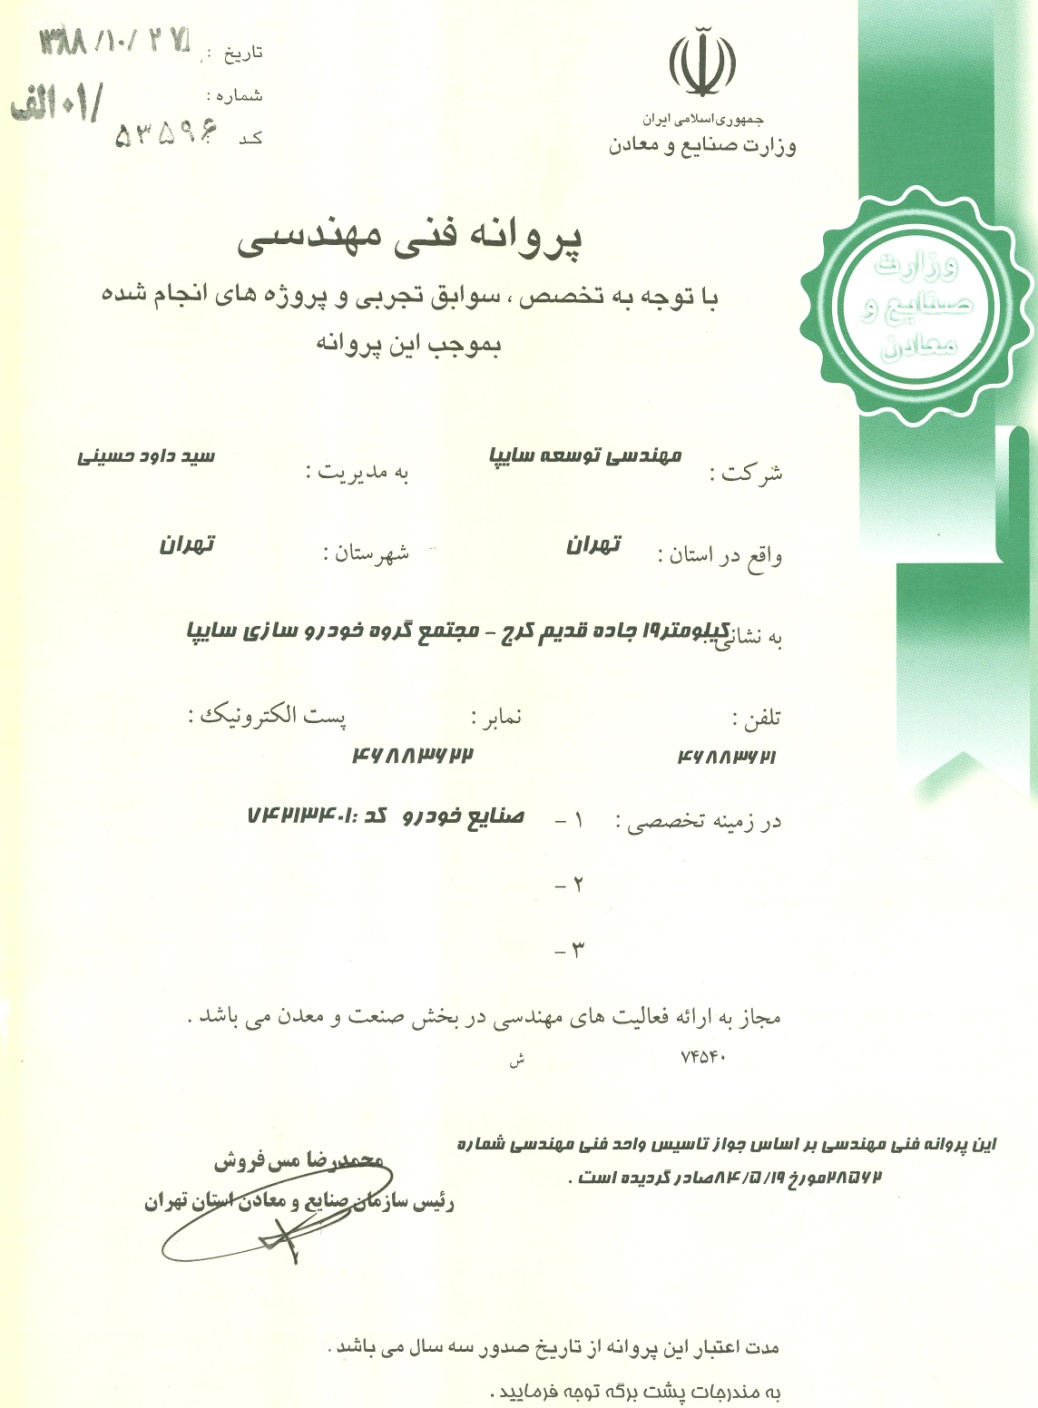 پروانه فنی مهندسی از وزارت صنایع و معادن در سال ‌۱۳۸۸